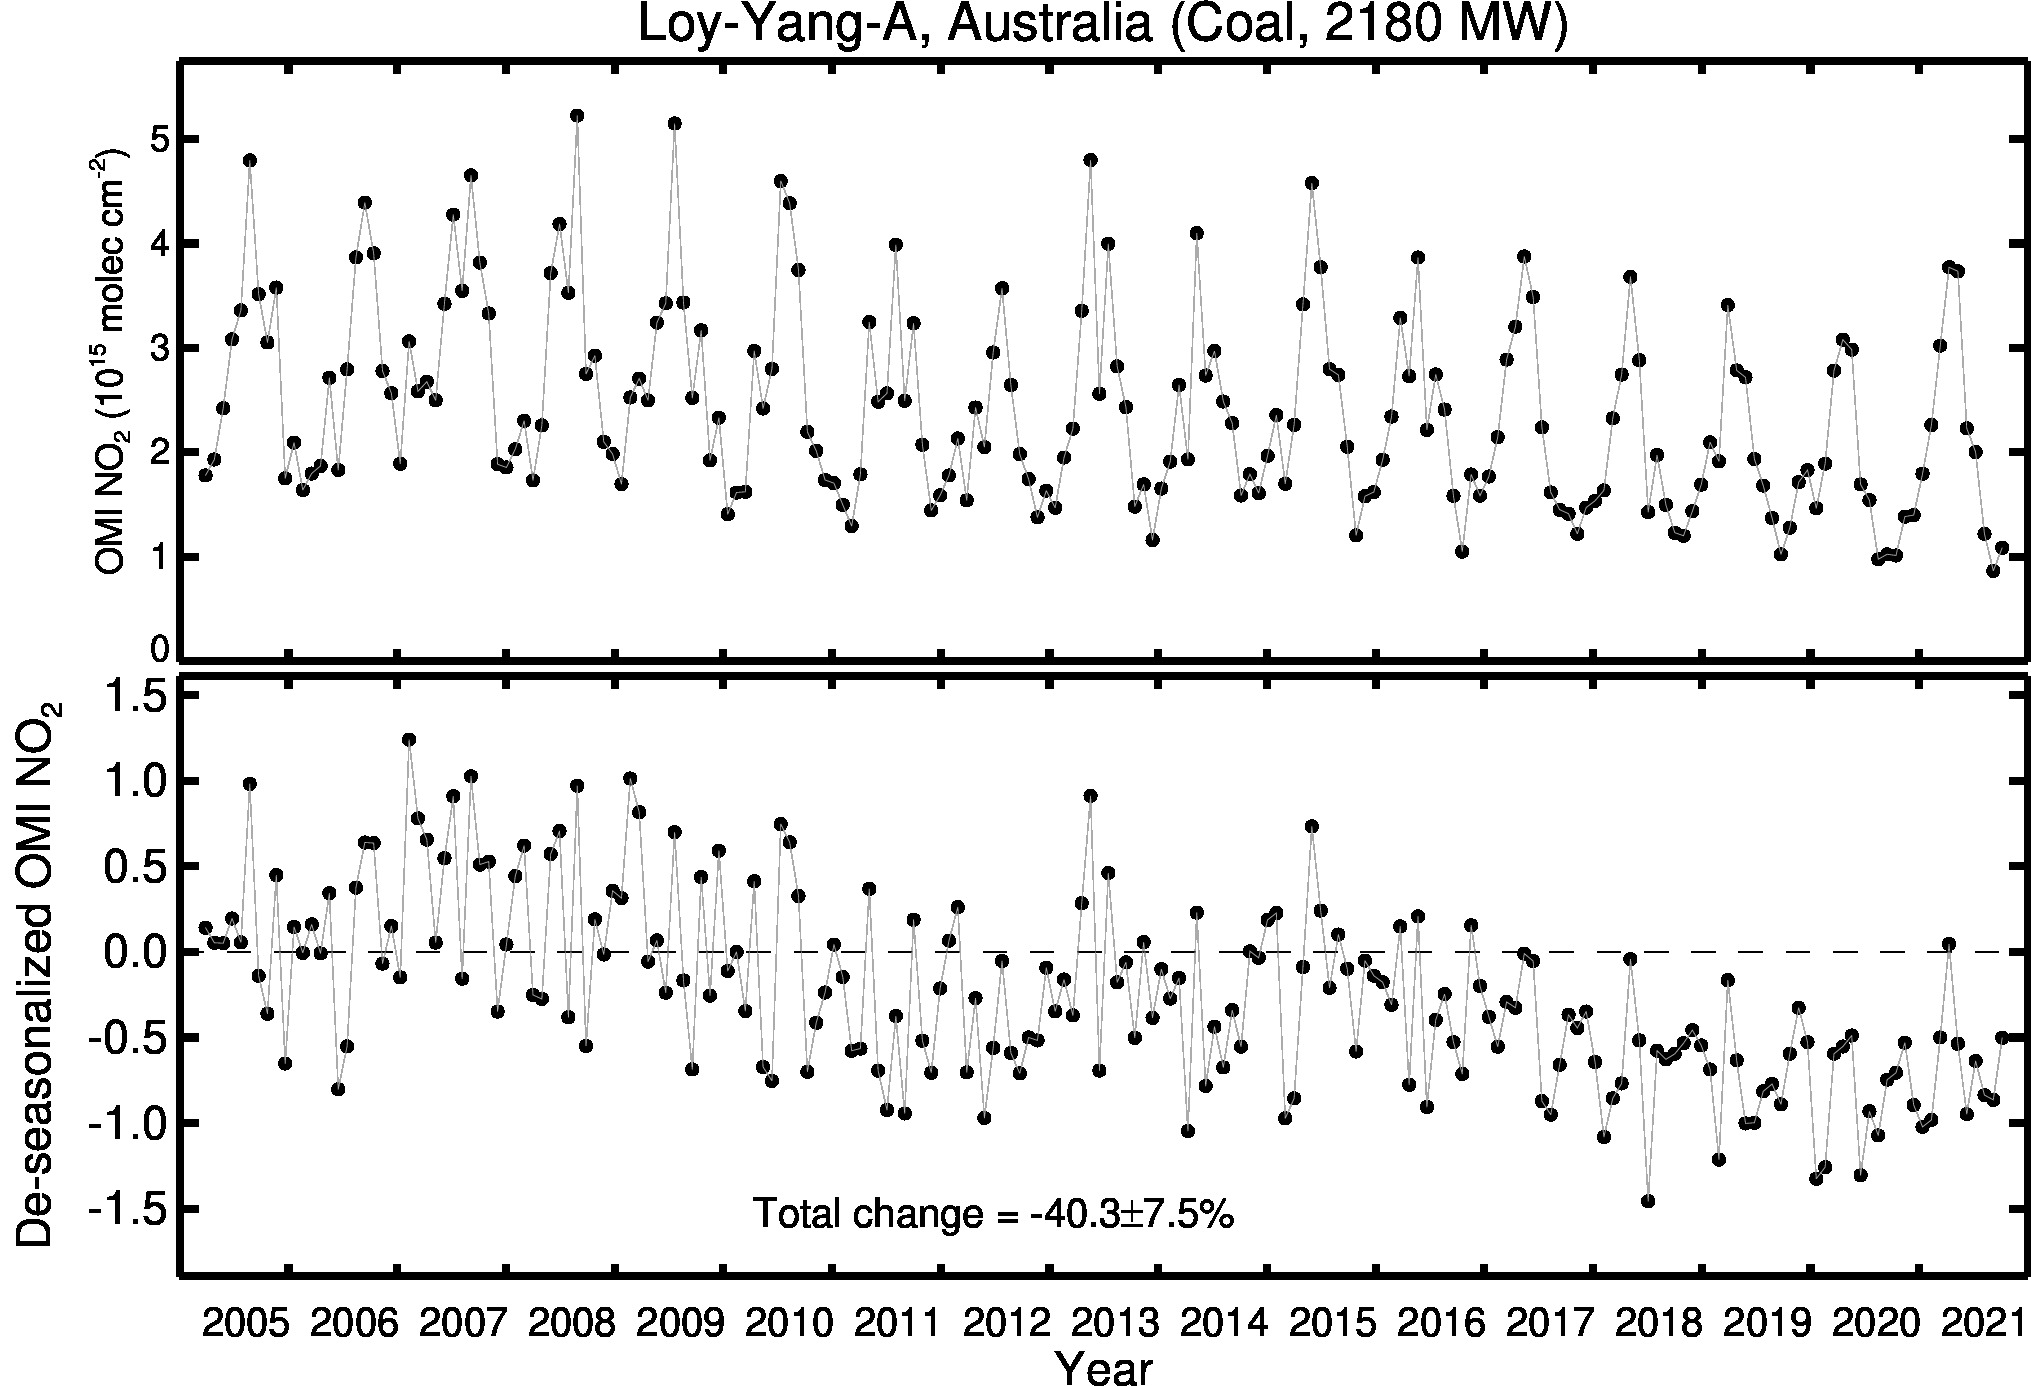 Loy Yang A Line Plot 2005-2021